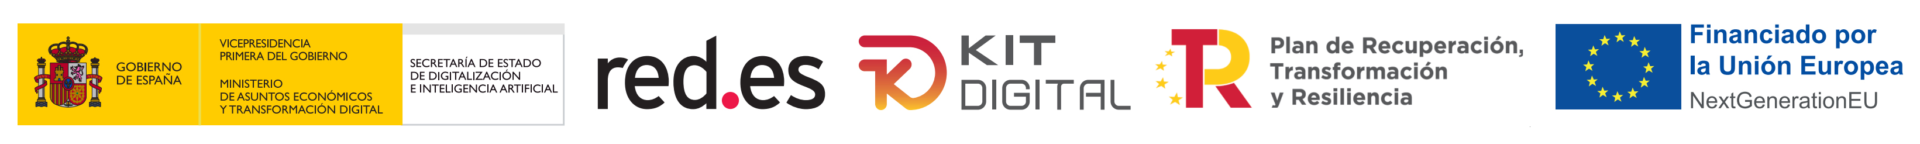 logos_proyecto_KIT-DIGITAL